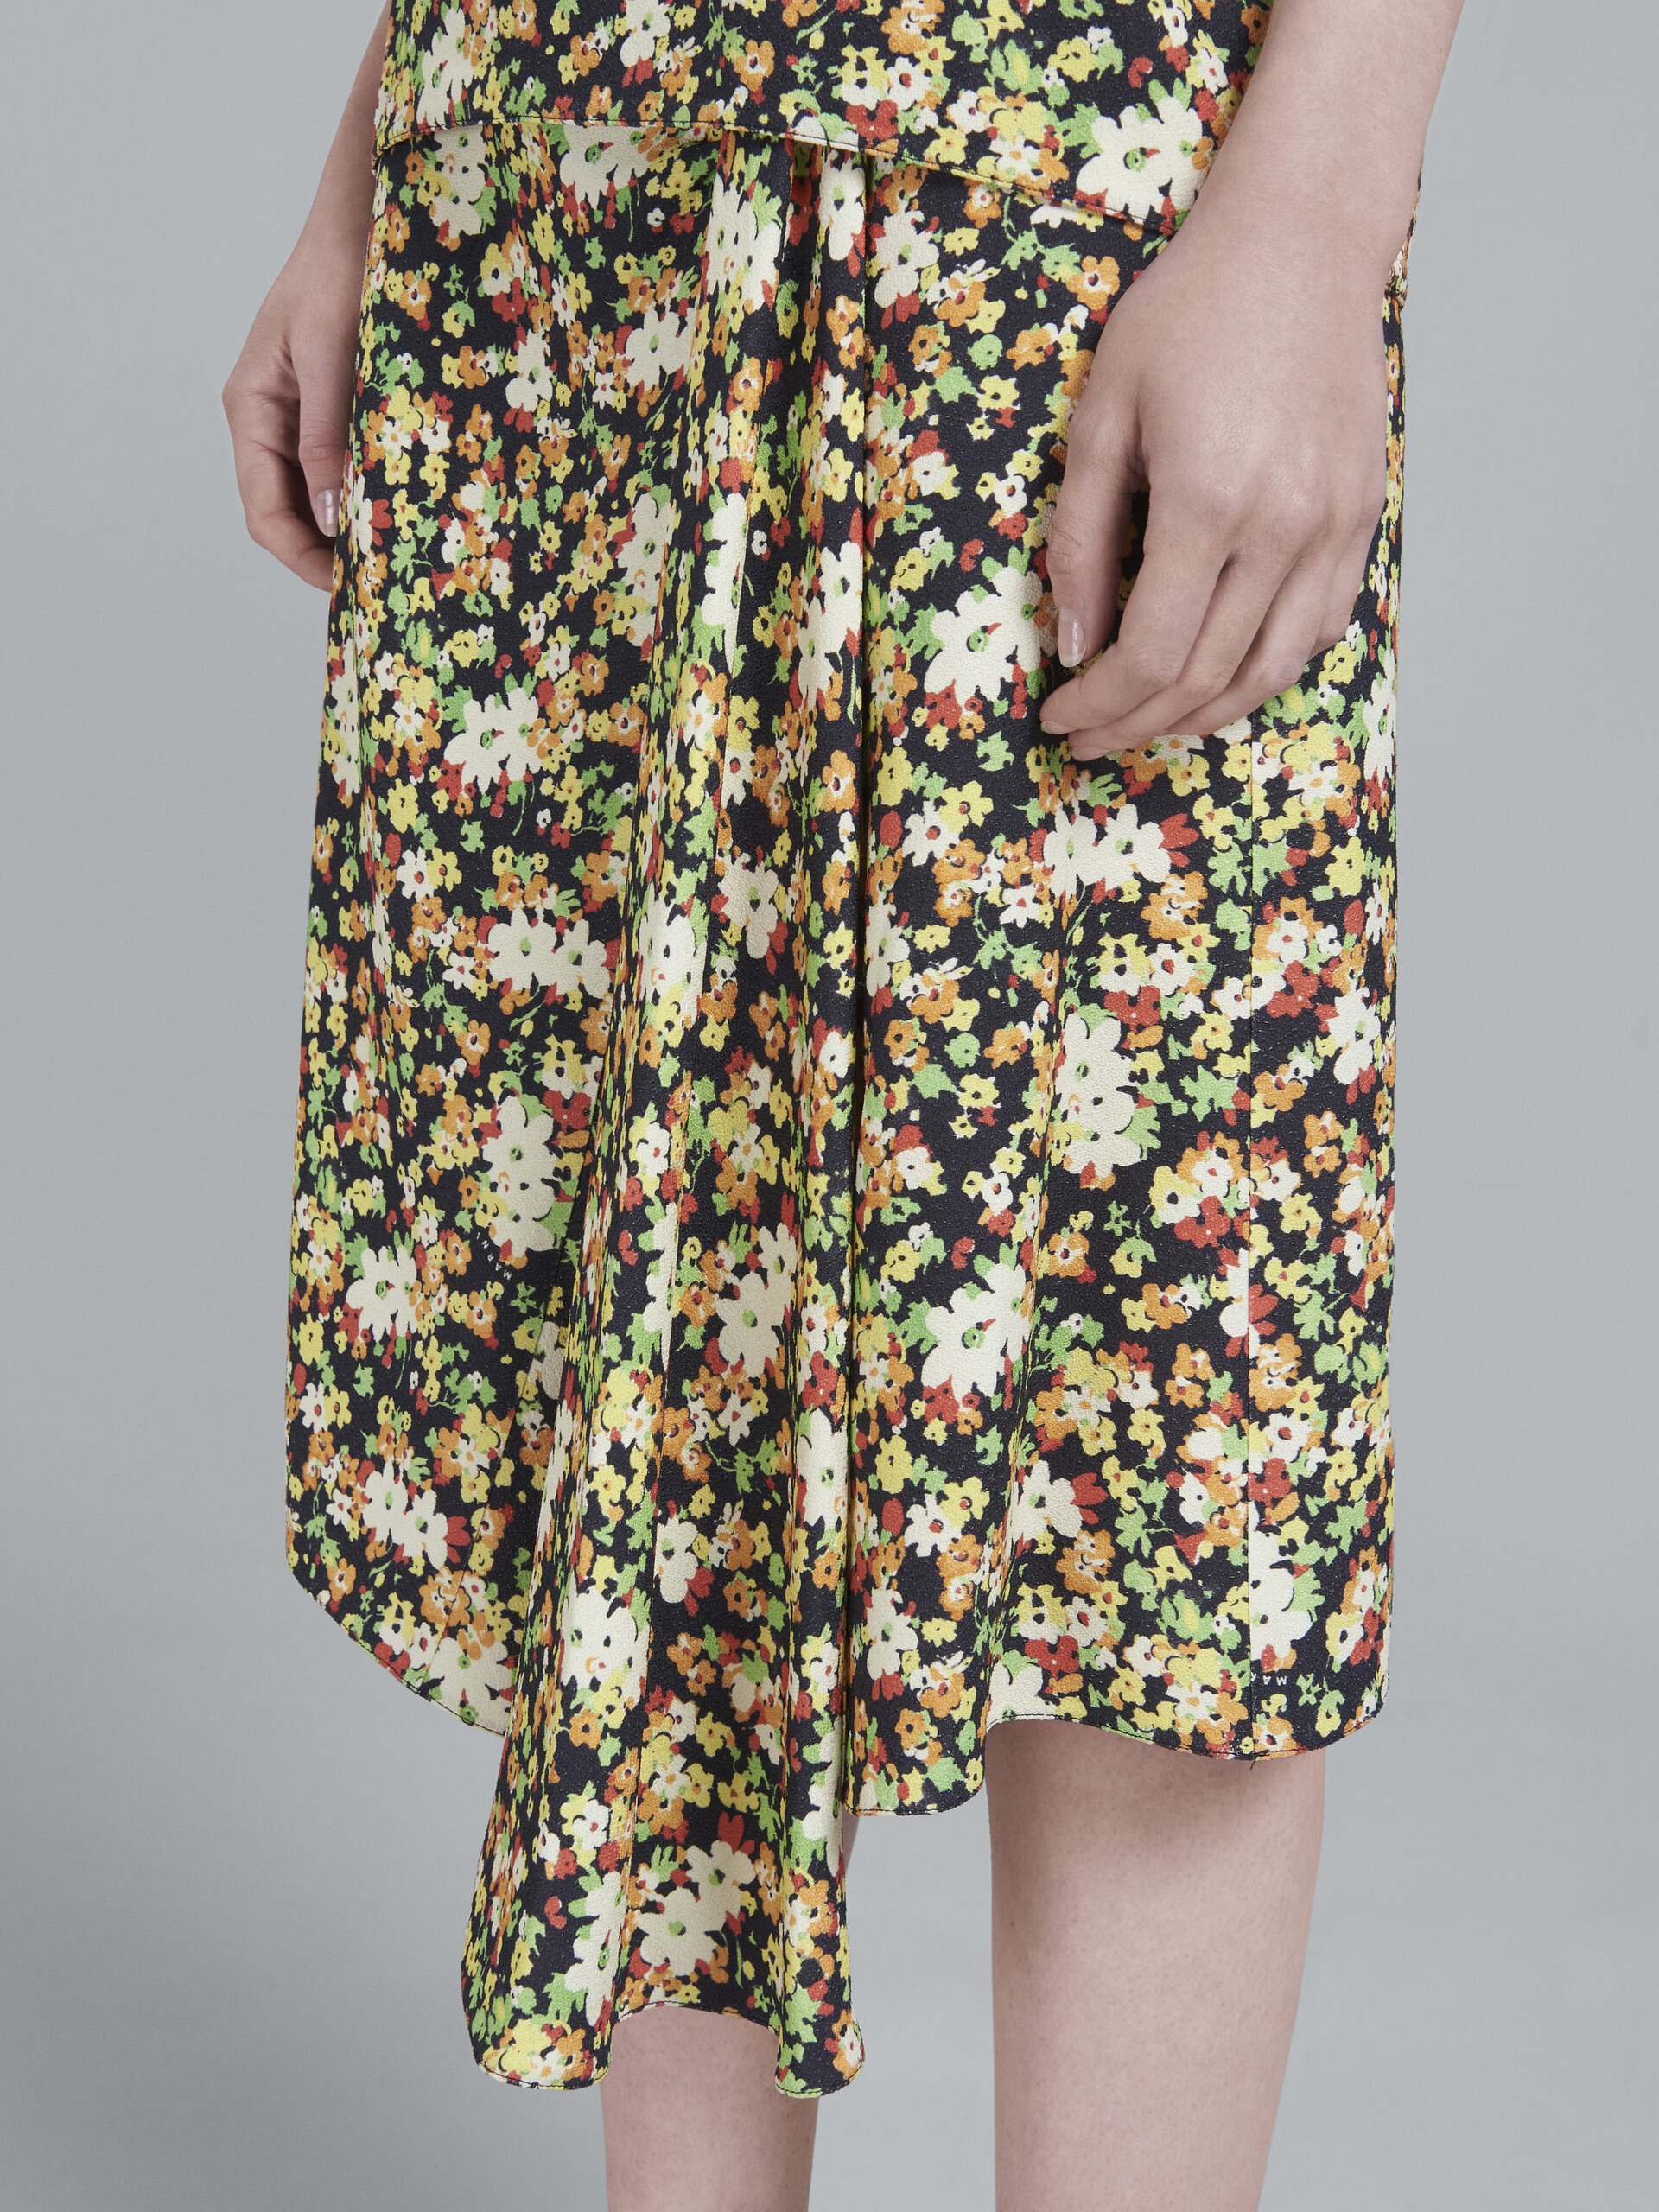 Lovers Prairie print skirt with godet hem - Skirts - Image 4